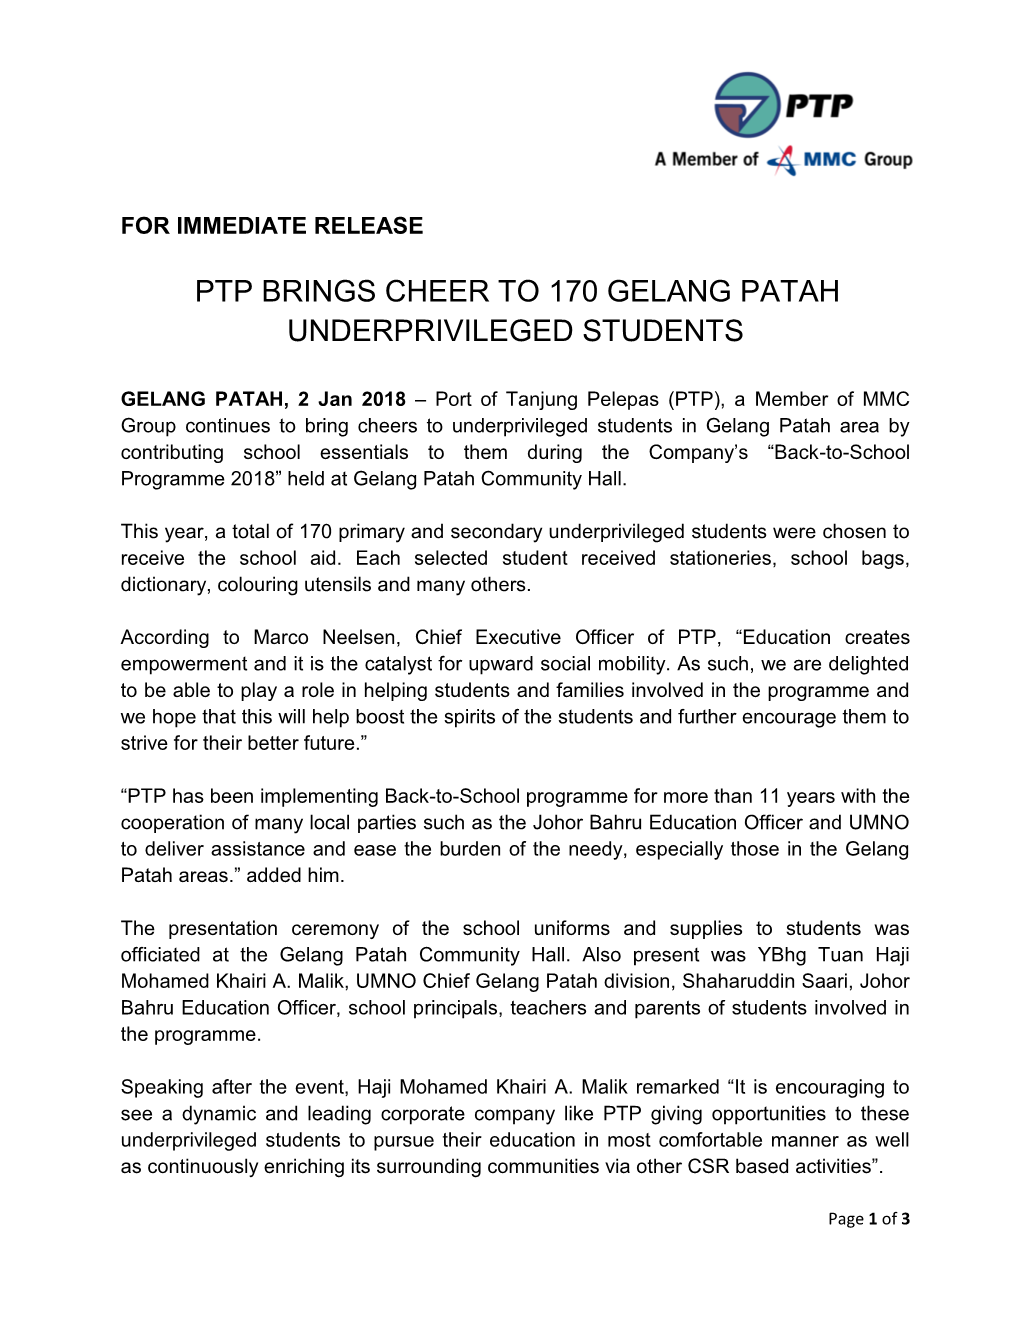 Ptp Brings Cheer to 170 Gelang Patah Underprivileged Students